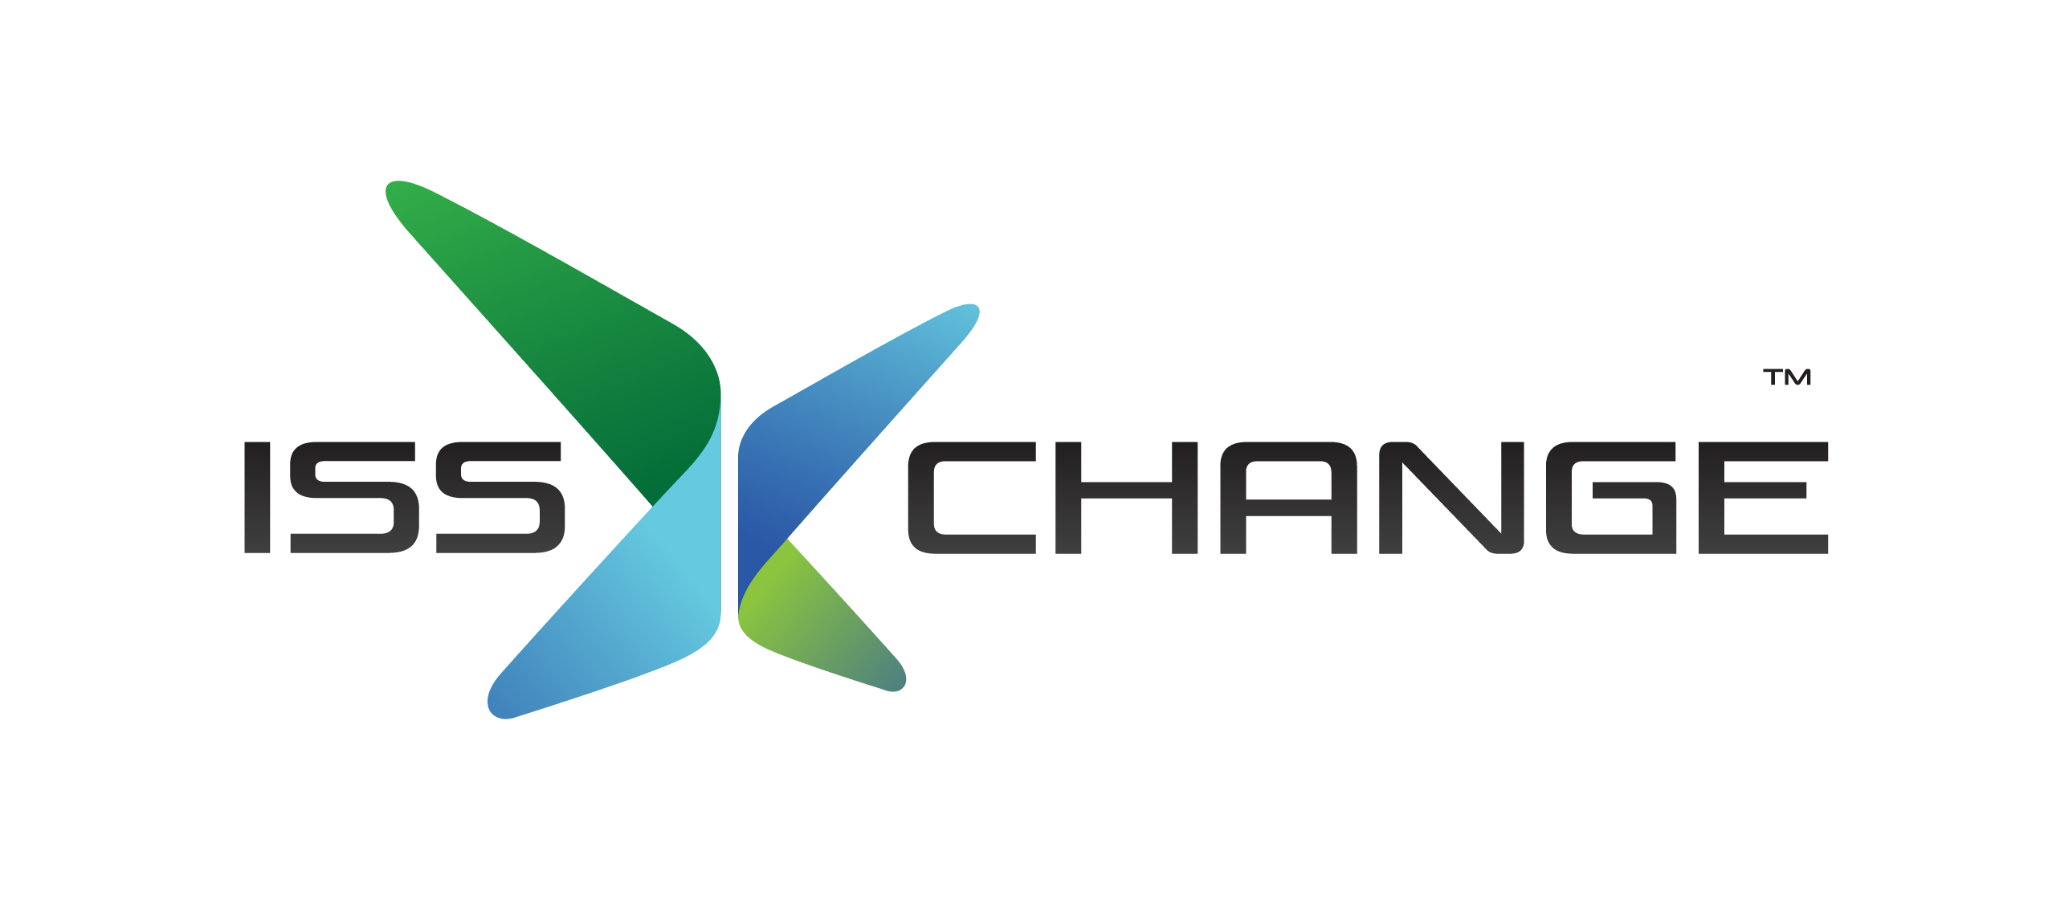 Isschange logo